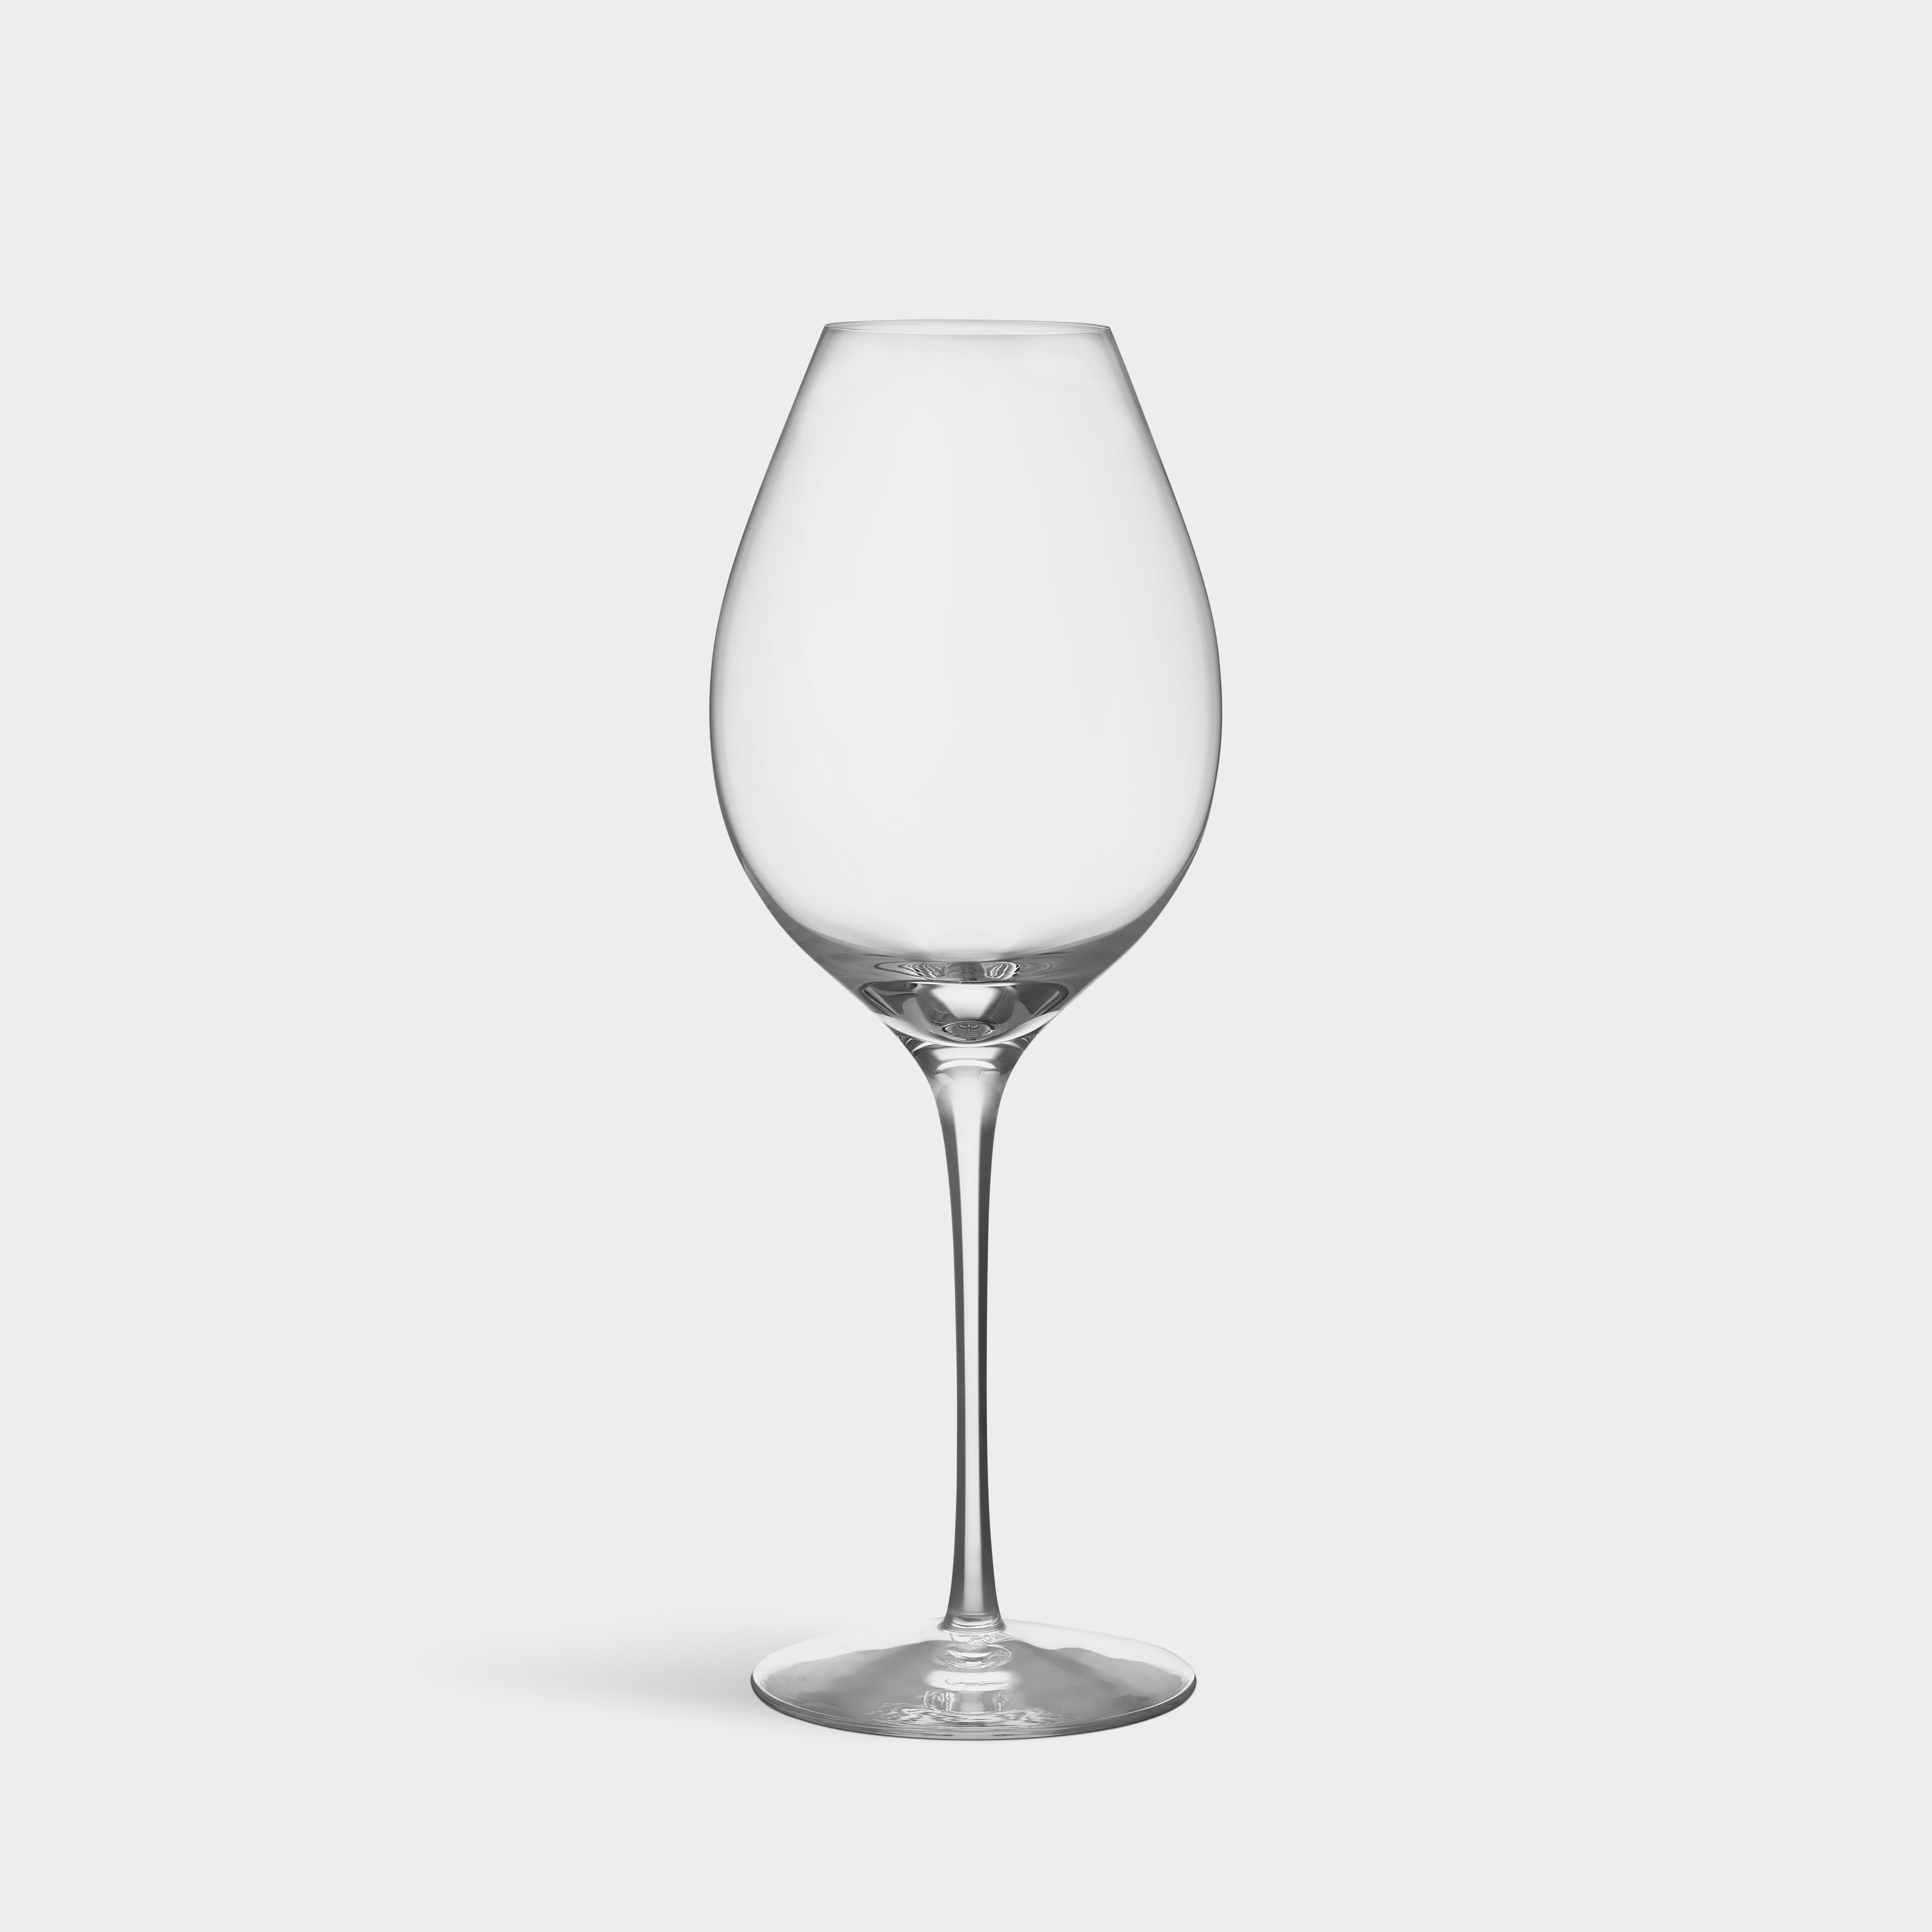 Le verre Difference Primeur d'Orrefors, d'une contenance de 21 oz, convient aux jeunes vins rouges caractérisés par la nature du raisin et la fraîcheur des baies. Le bol permet aux jeunes arômes de se développer avec un grand volume d'air.